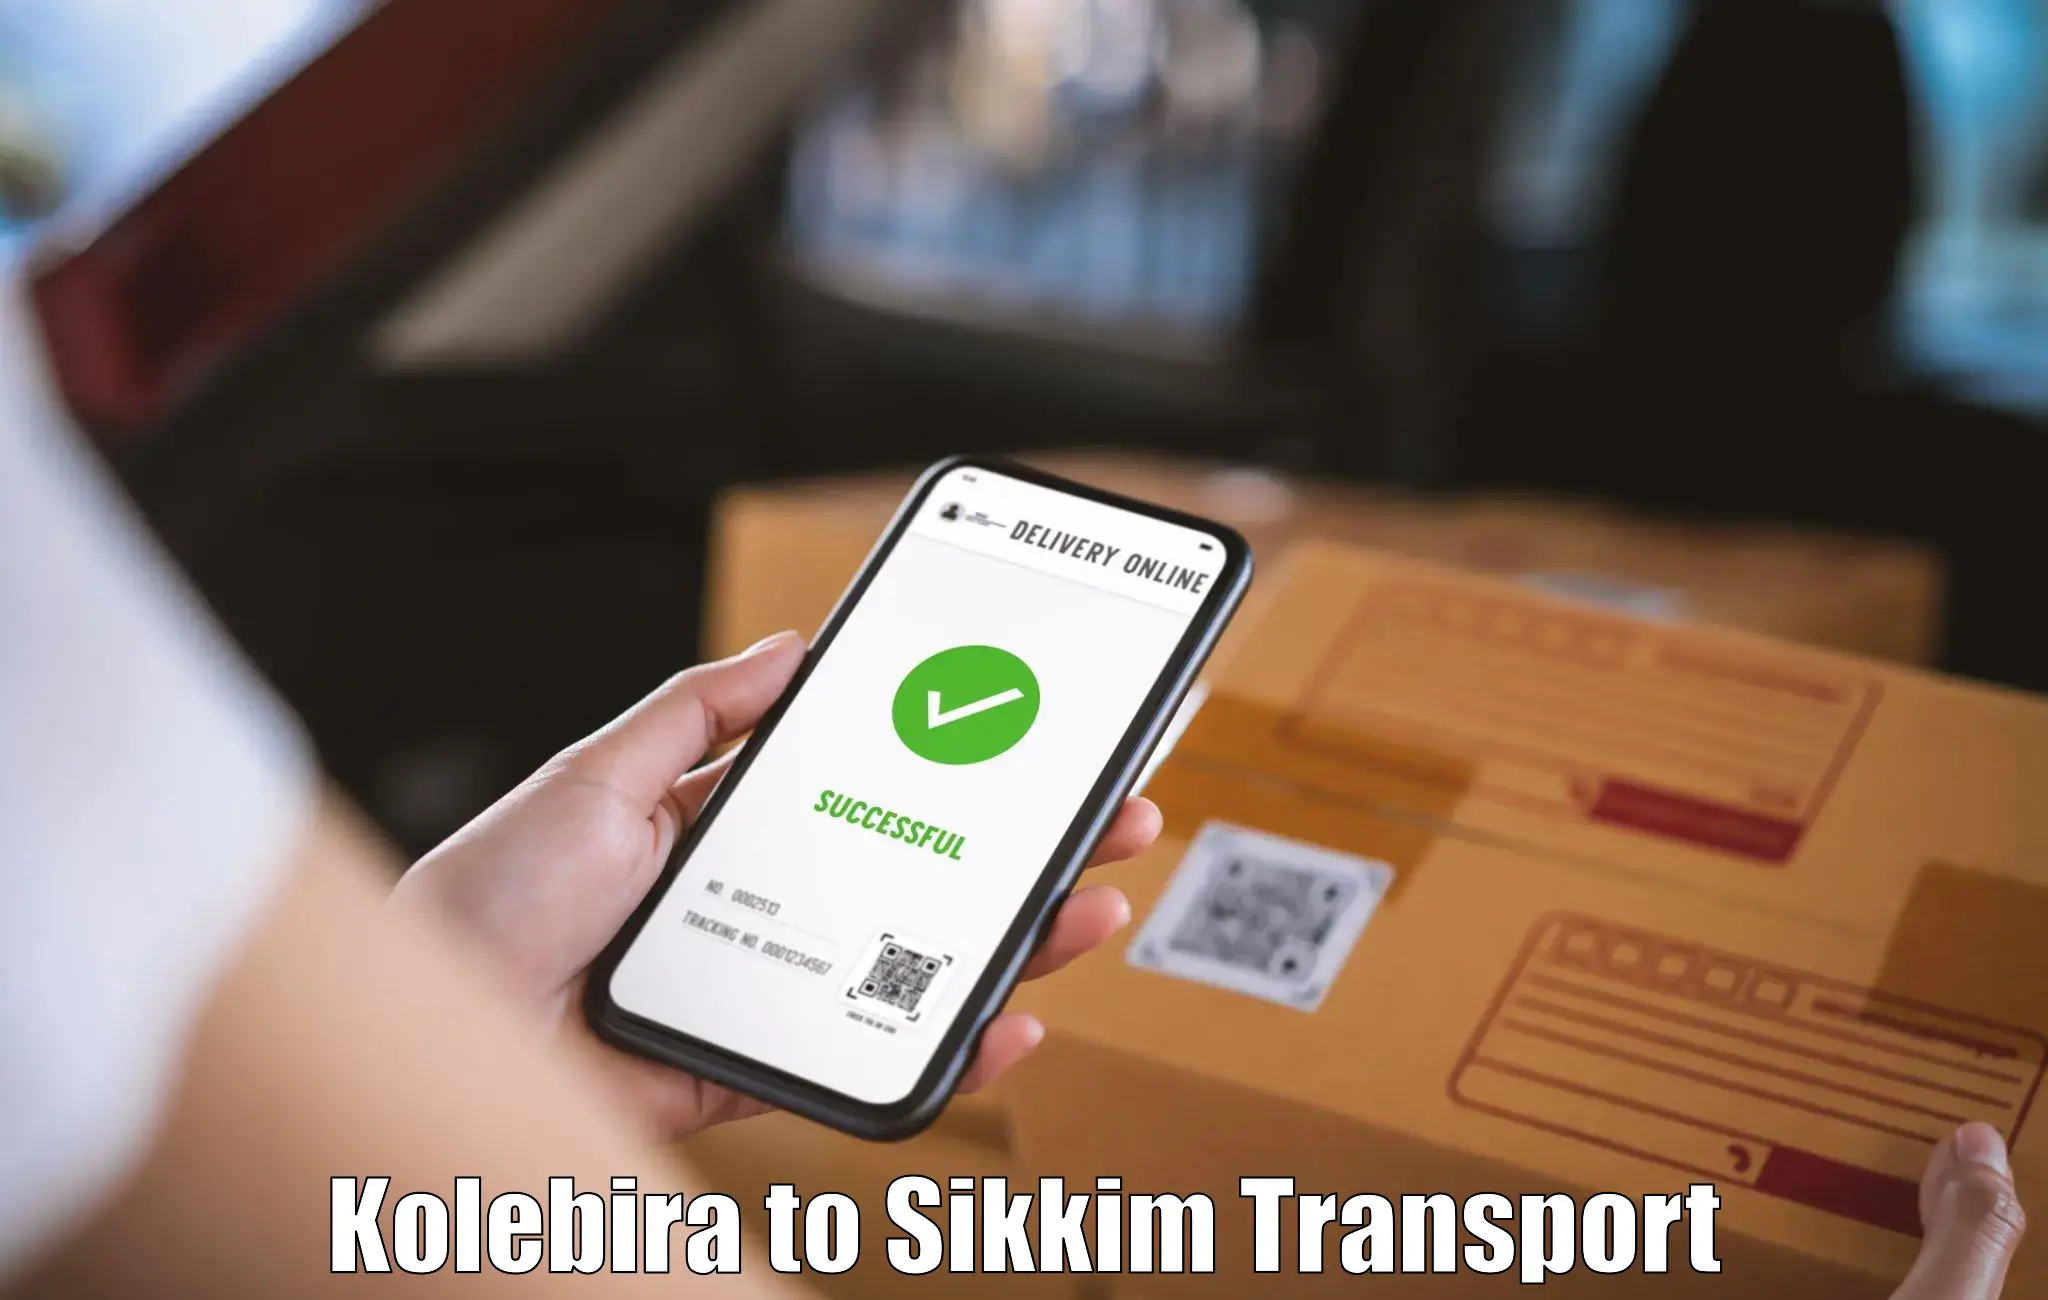 Furniture transport service Kolebira to North Sikkim